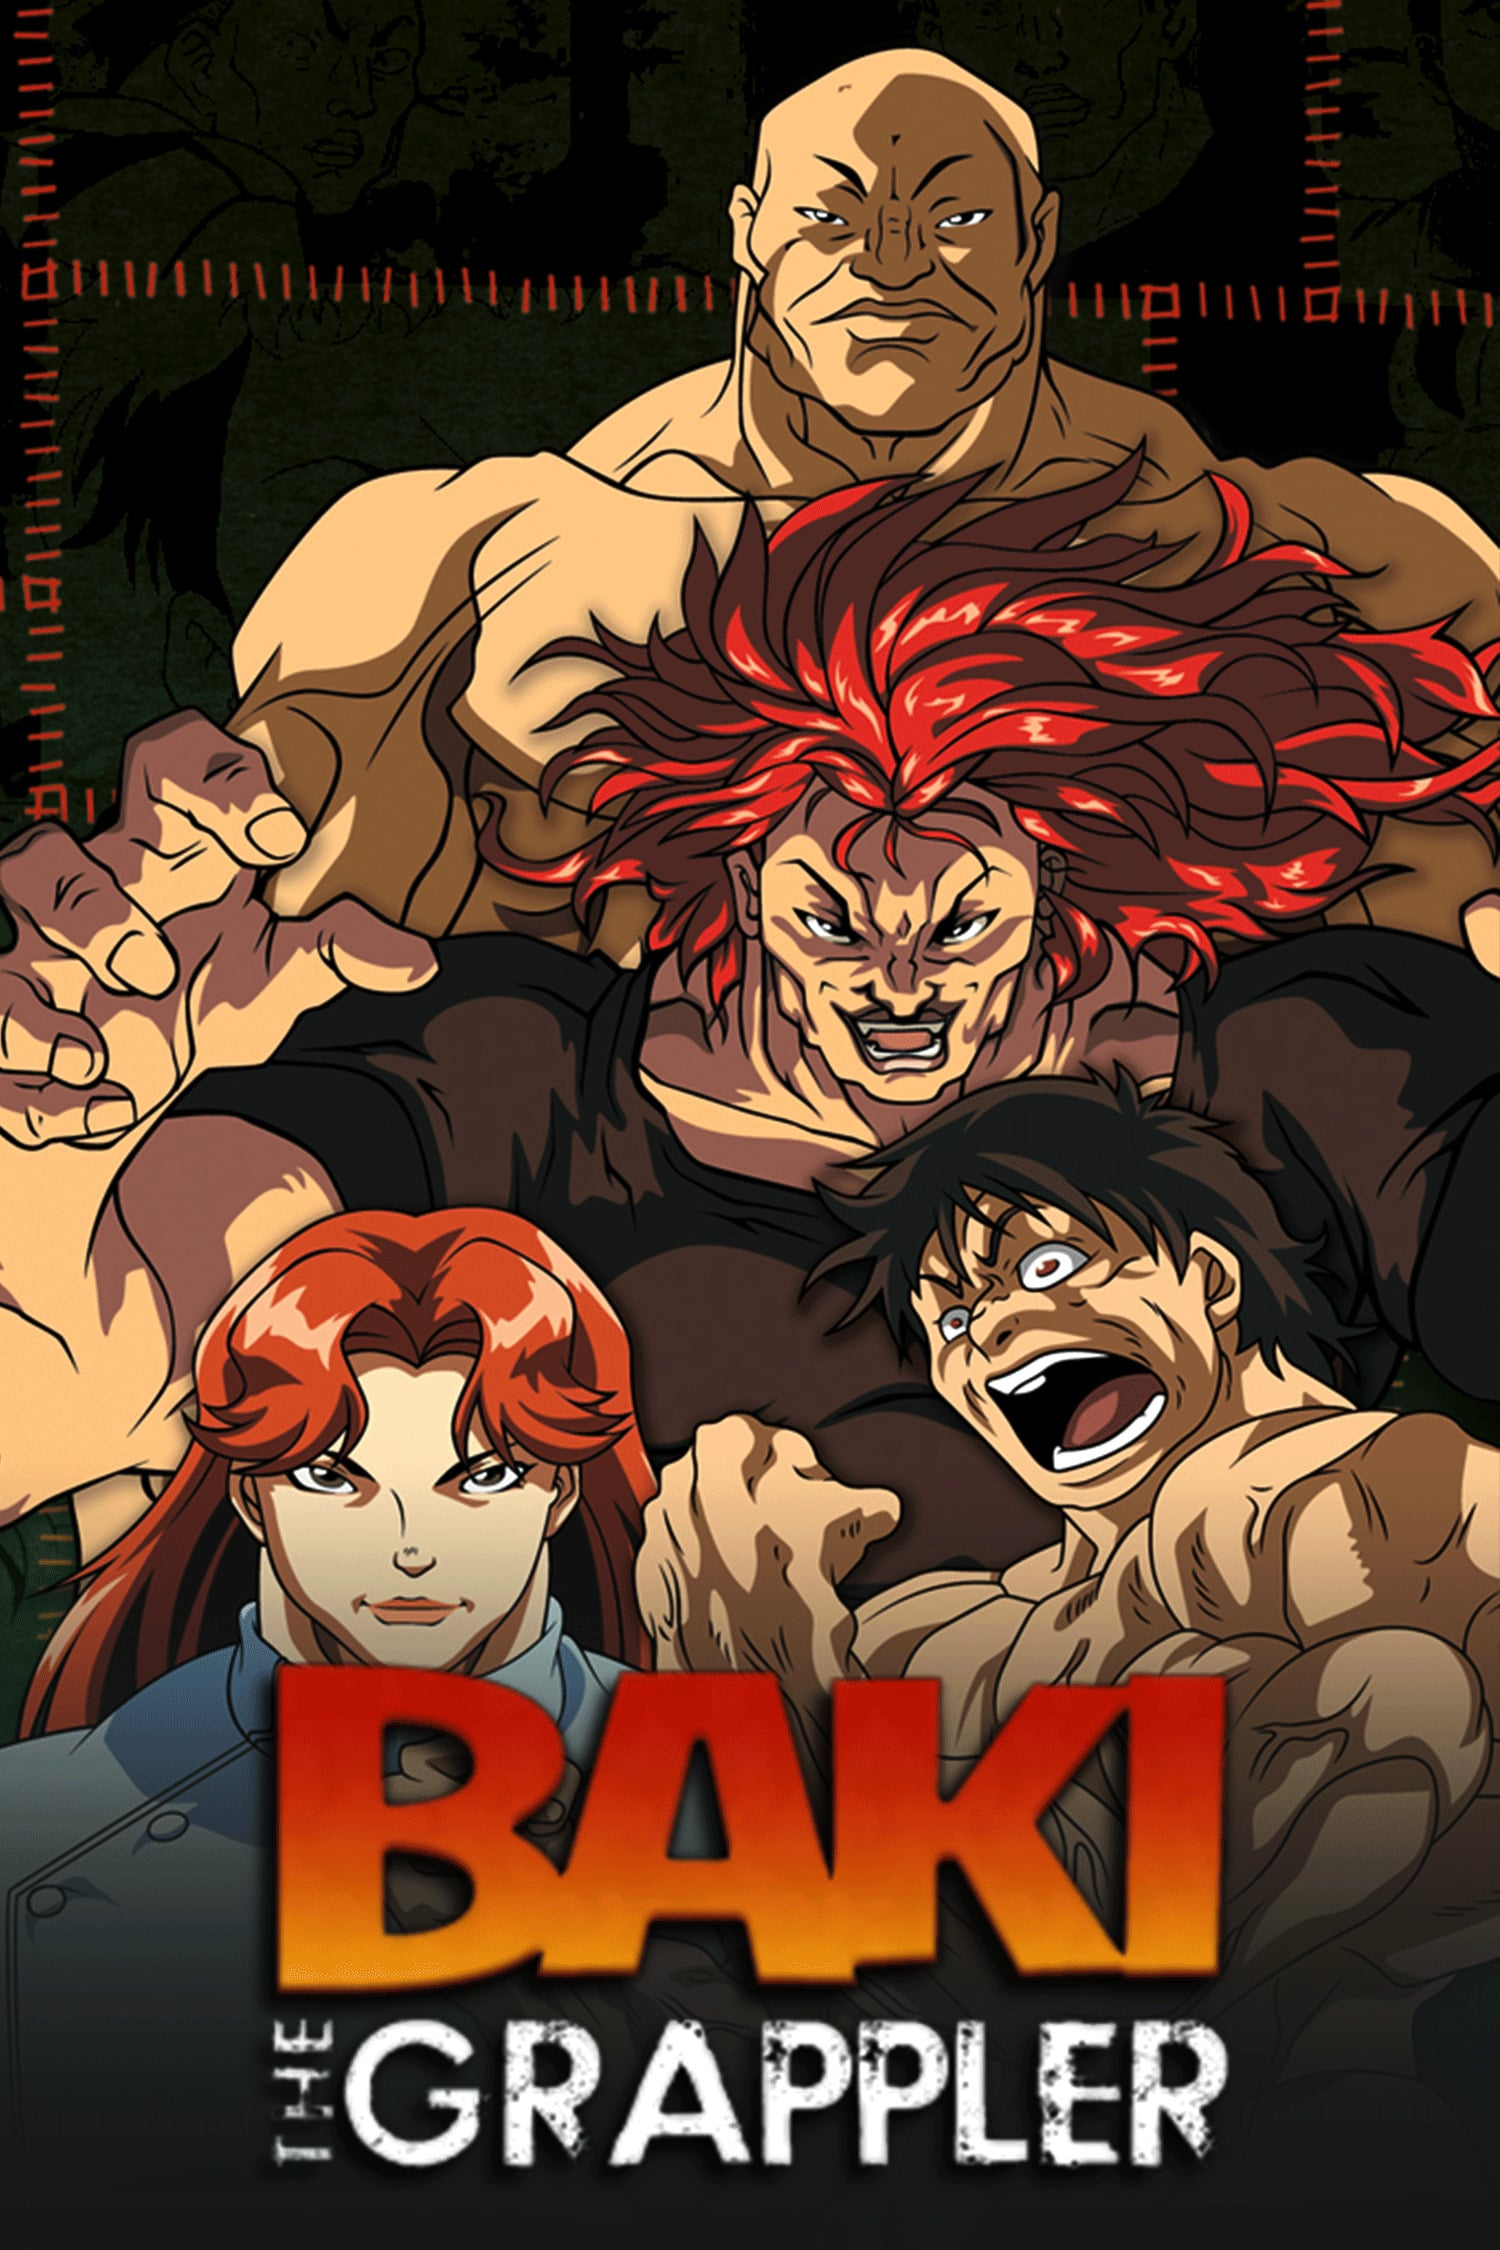 Baki y Baki the Grappler: ¿En qué orden se deben ver estos animes?